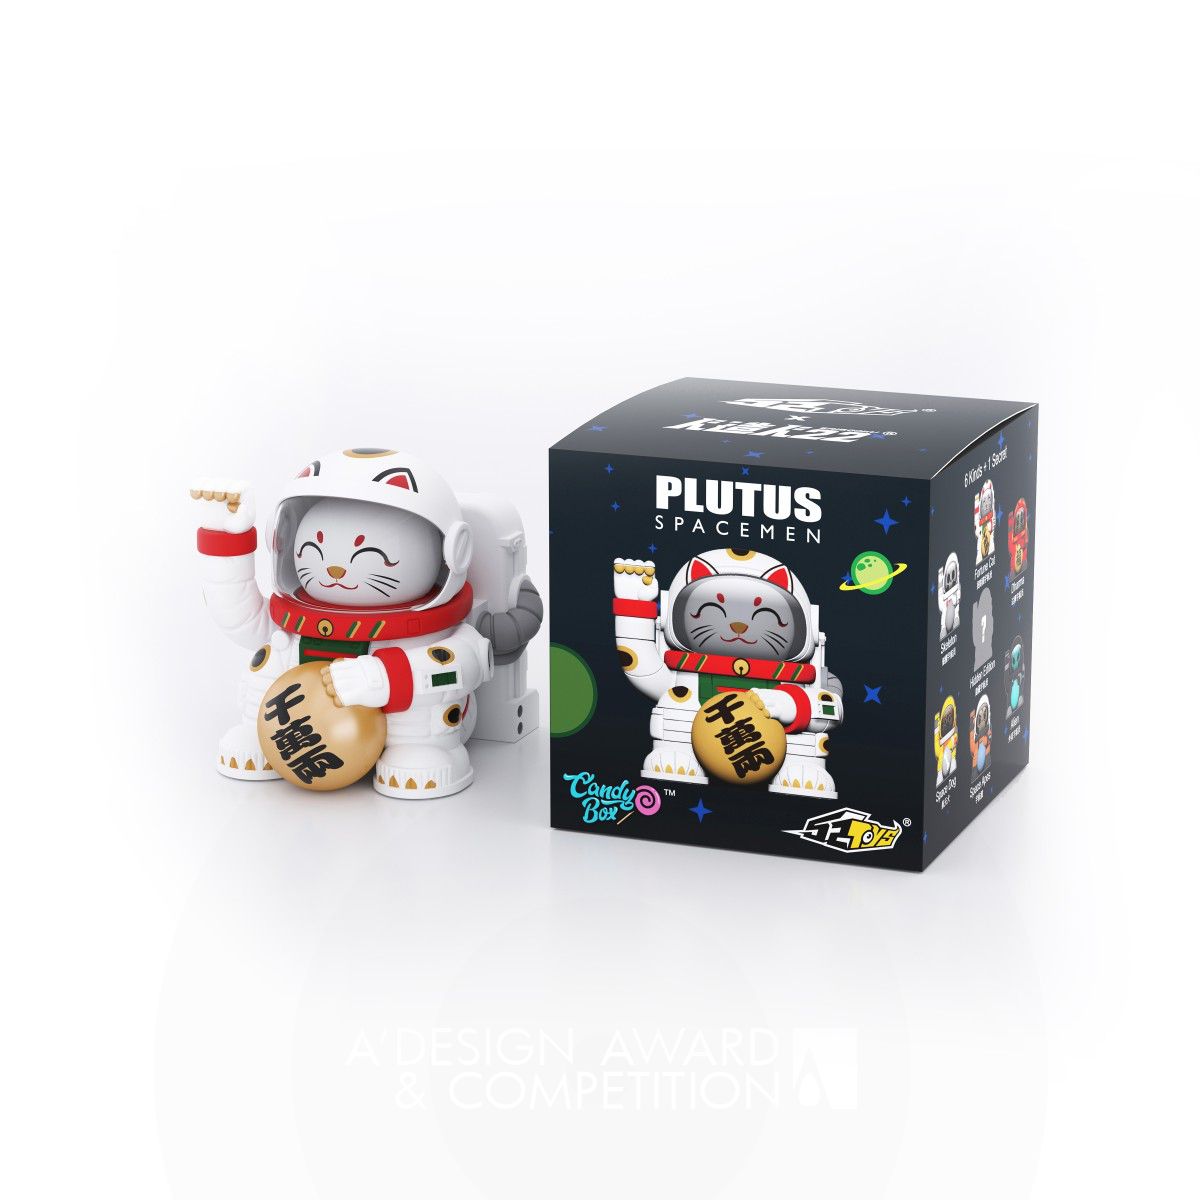 Plutus Spacemen Toys